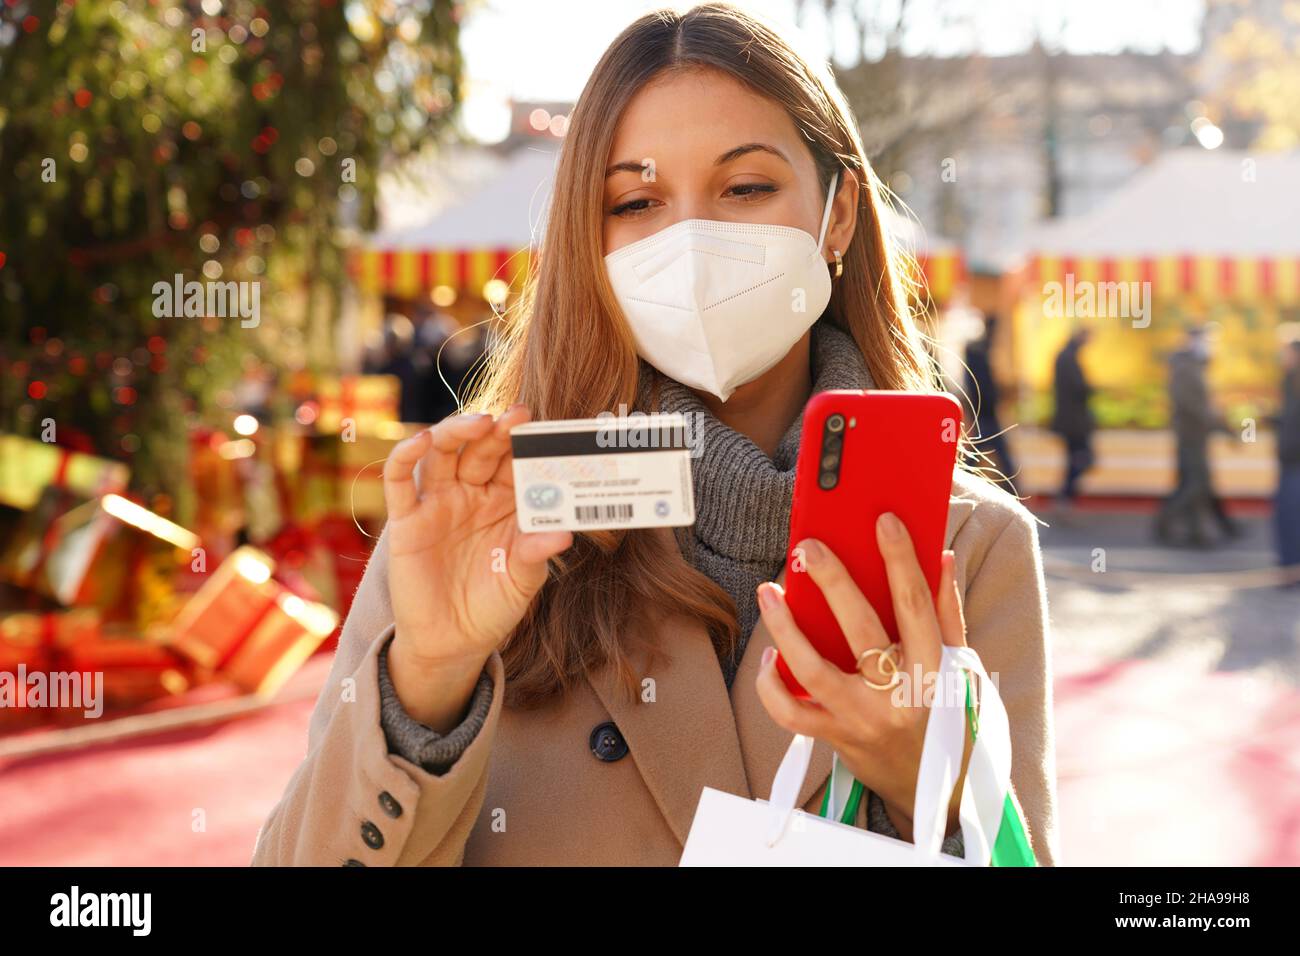 Femme élégante avec KN95 FFP2 masque de protection regardant le numéro de carte de crédit à insérer sur le smartphone pour le paiement en ligne avec les marchés de Noël au dos Banque D'Images